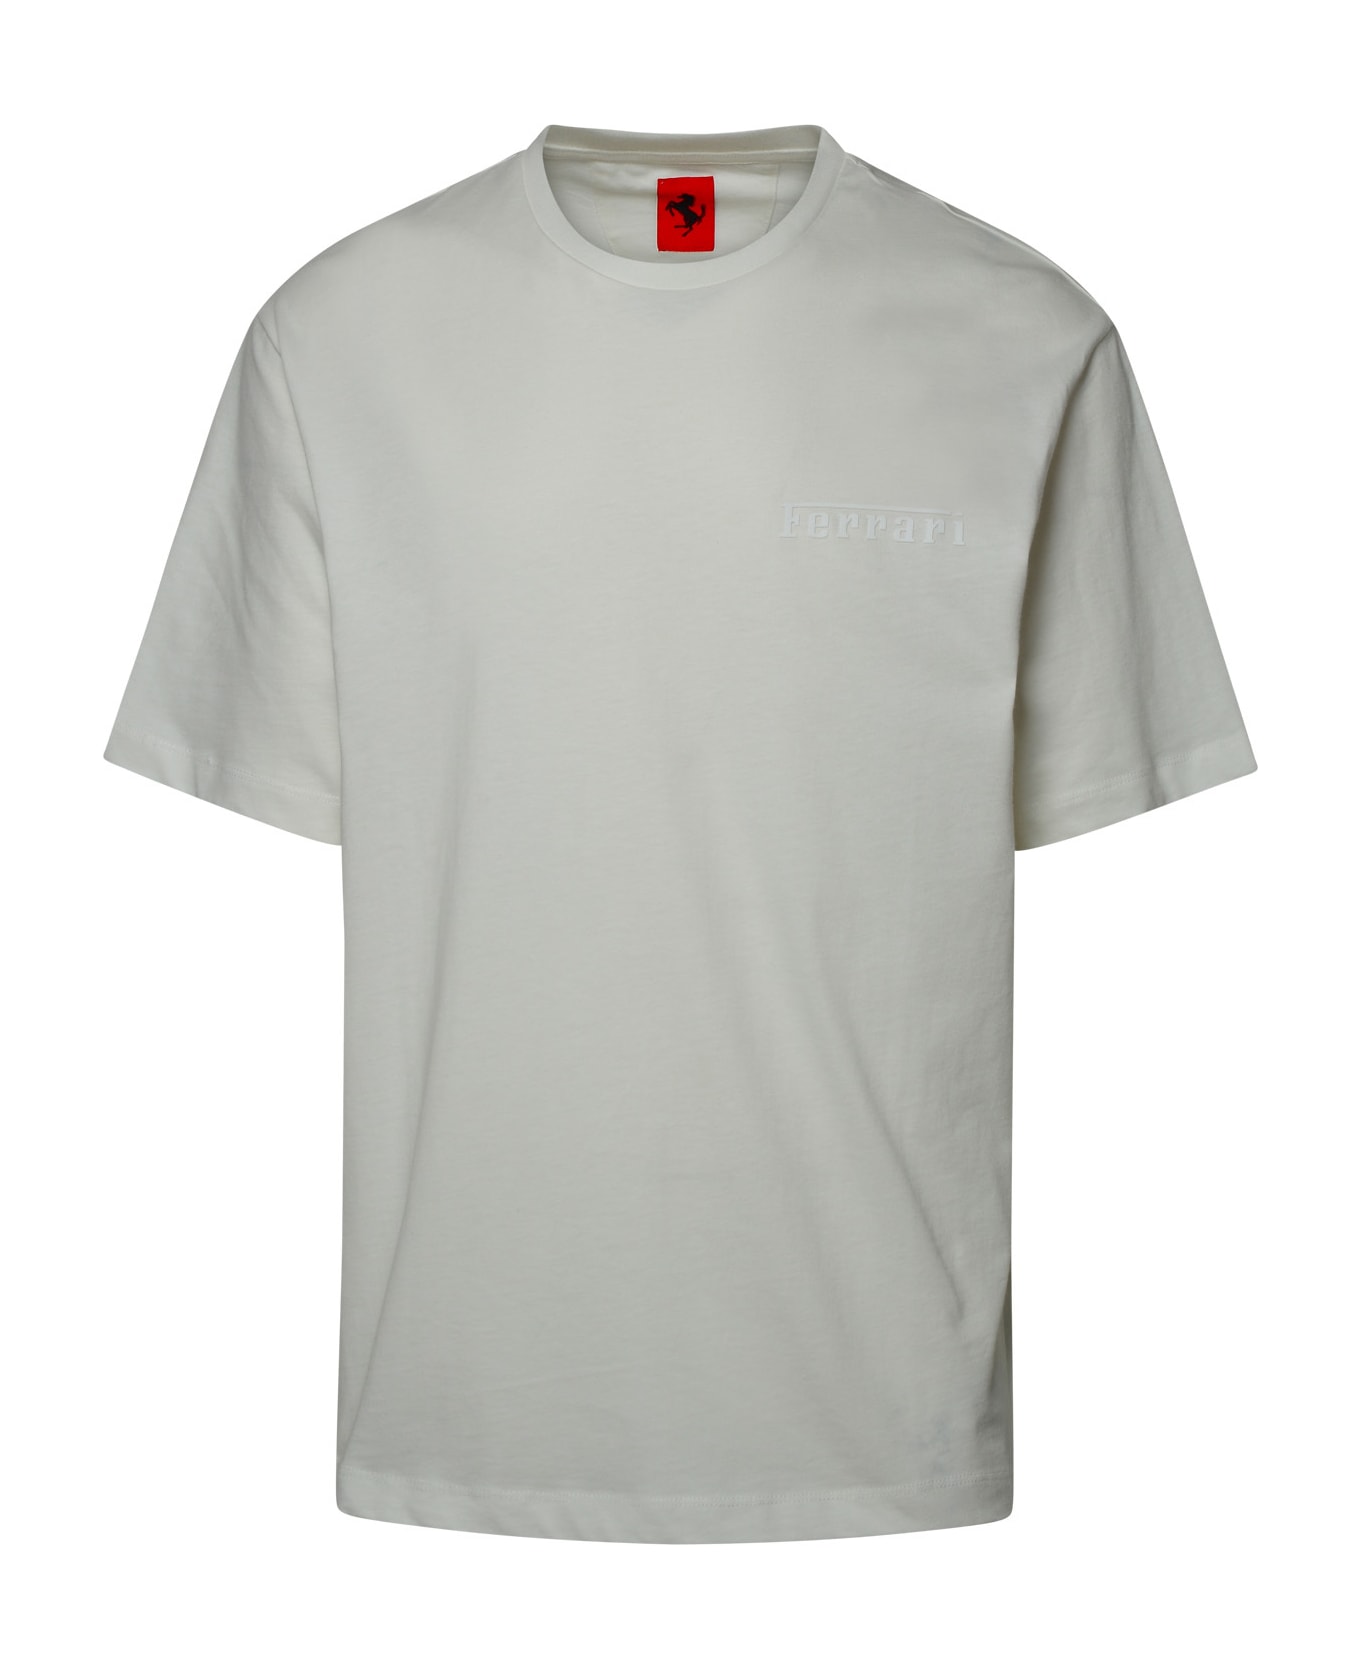 Ferrari White Cotton T-shirt - White シャツ